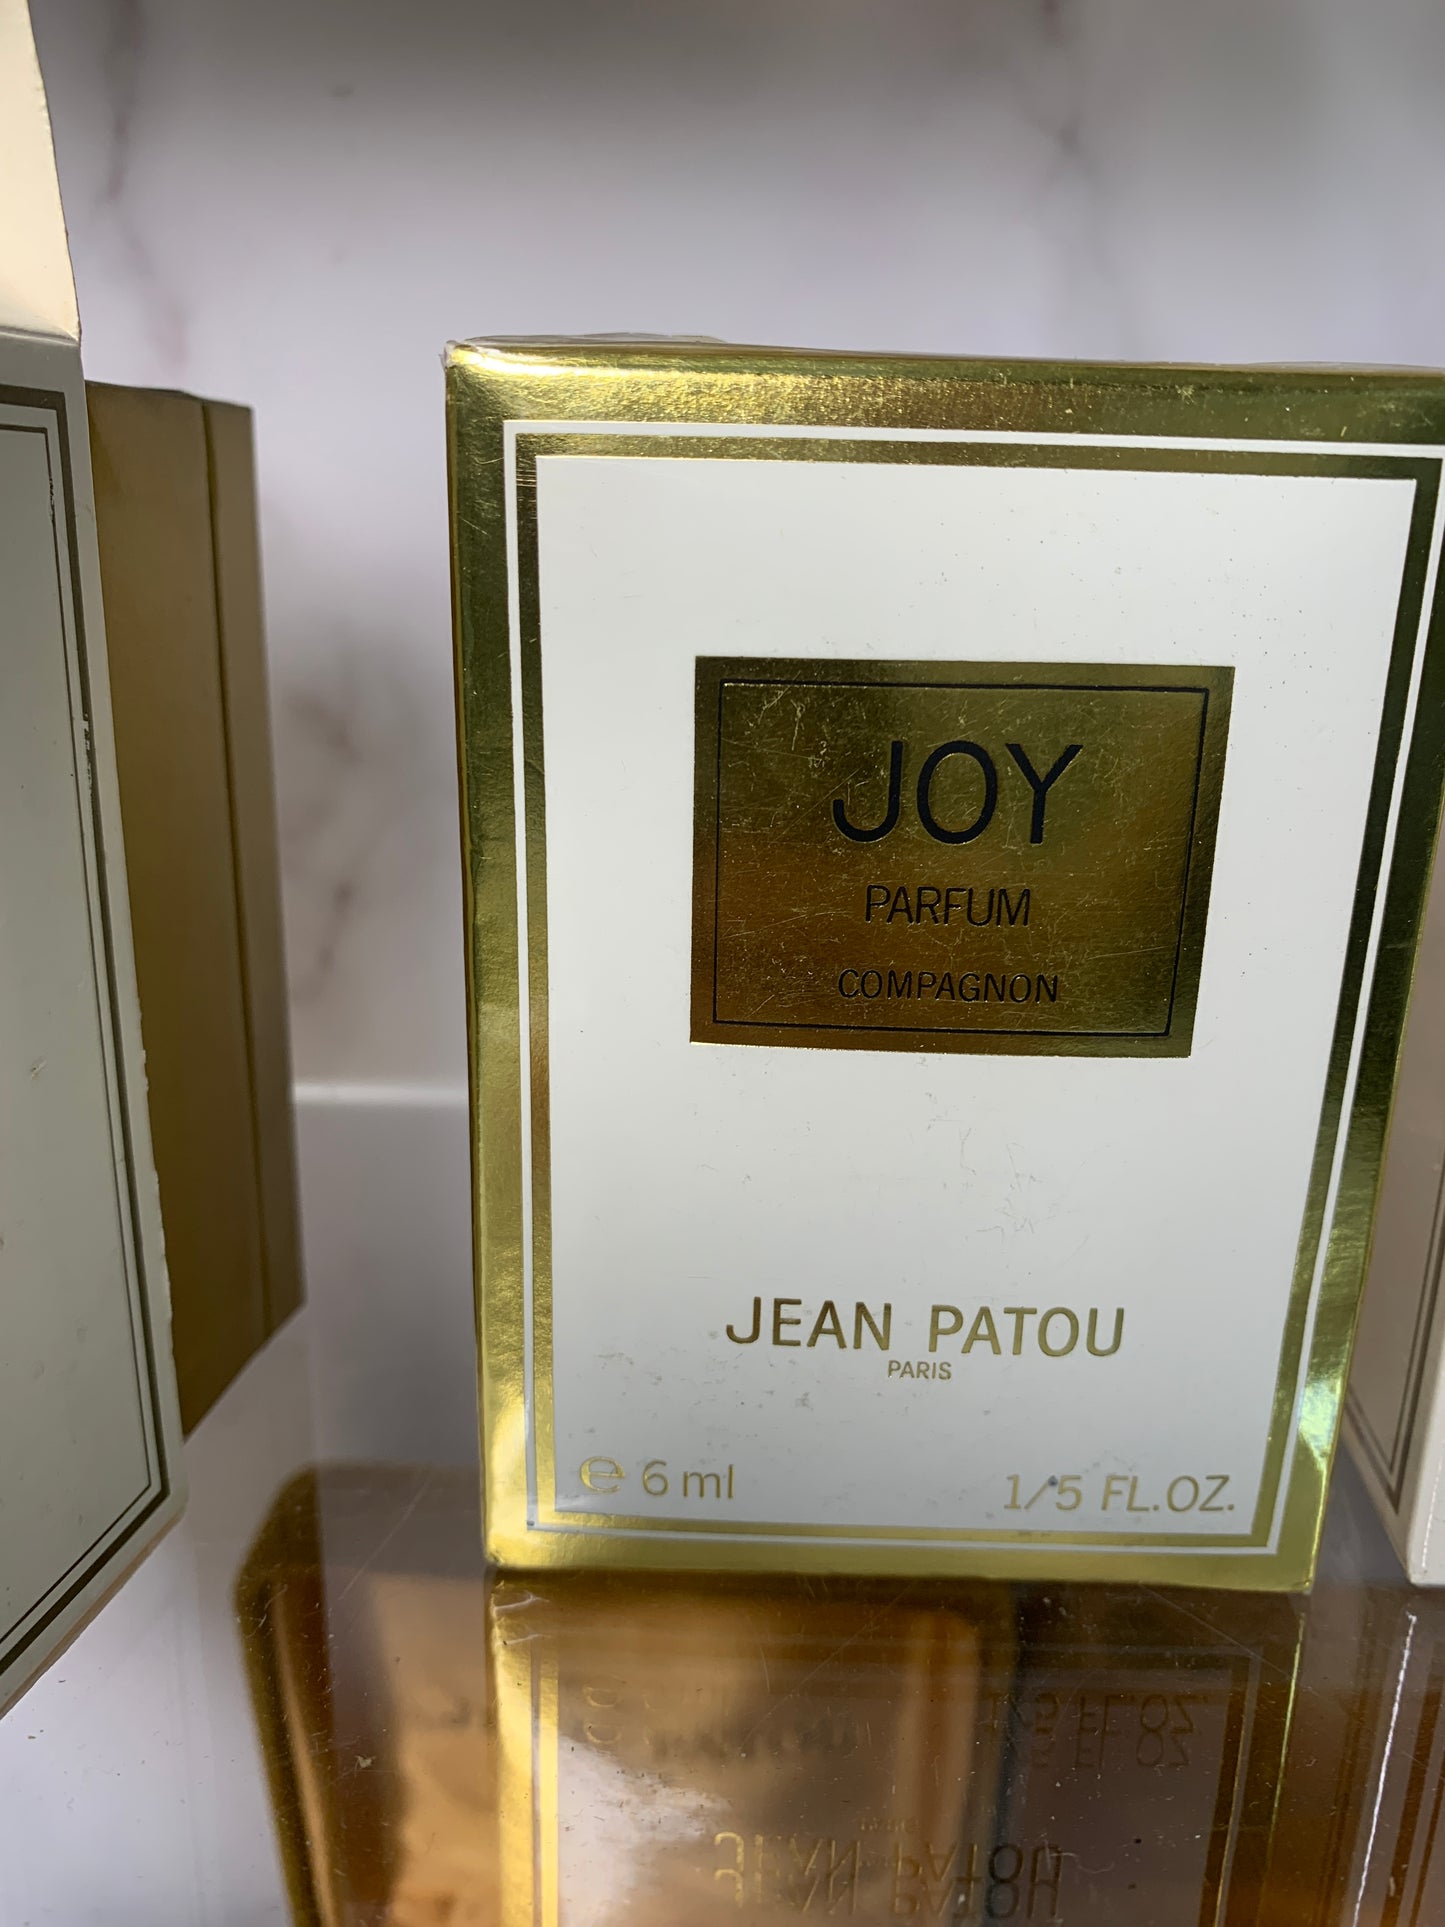 Jean Patou Parfum Joy 1000 Eau de 90ml 45ml 30ml perfume 7.5ml 15ml